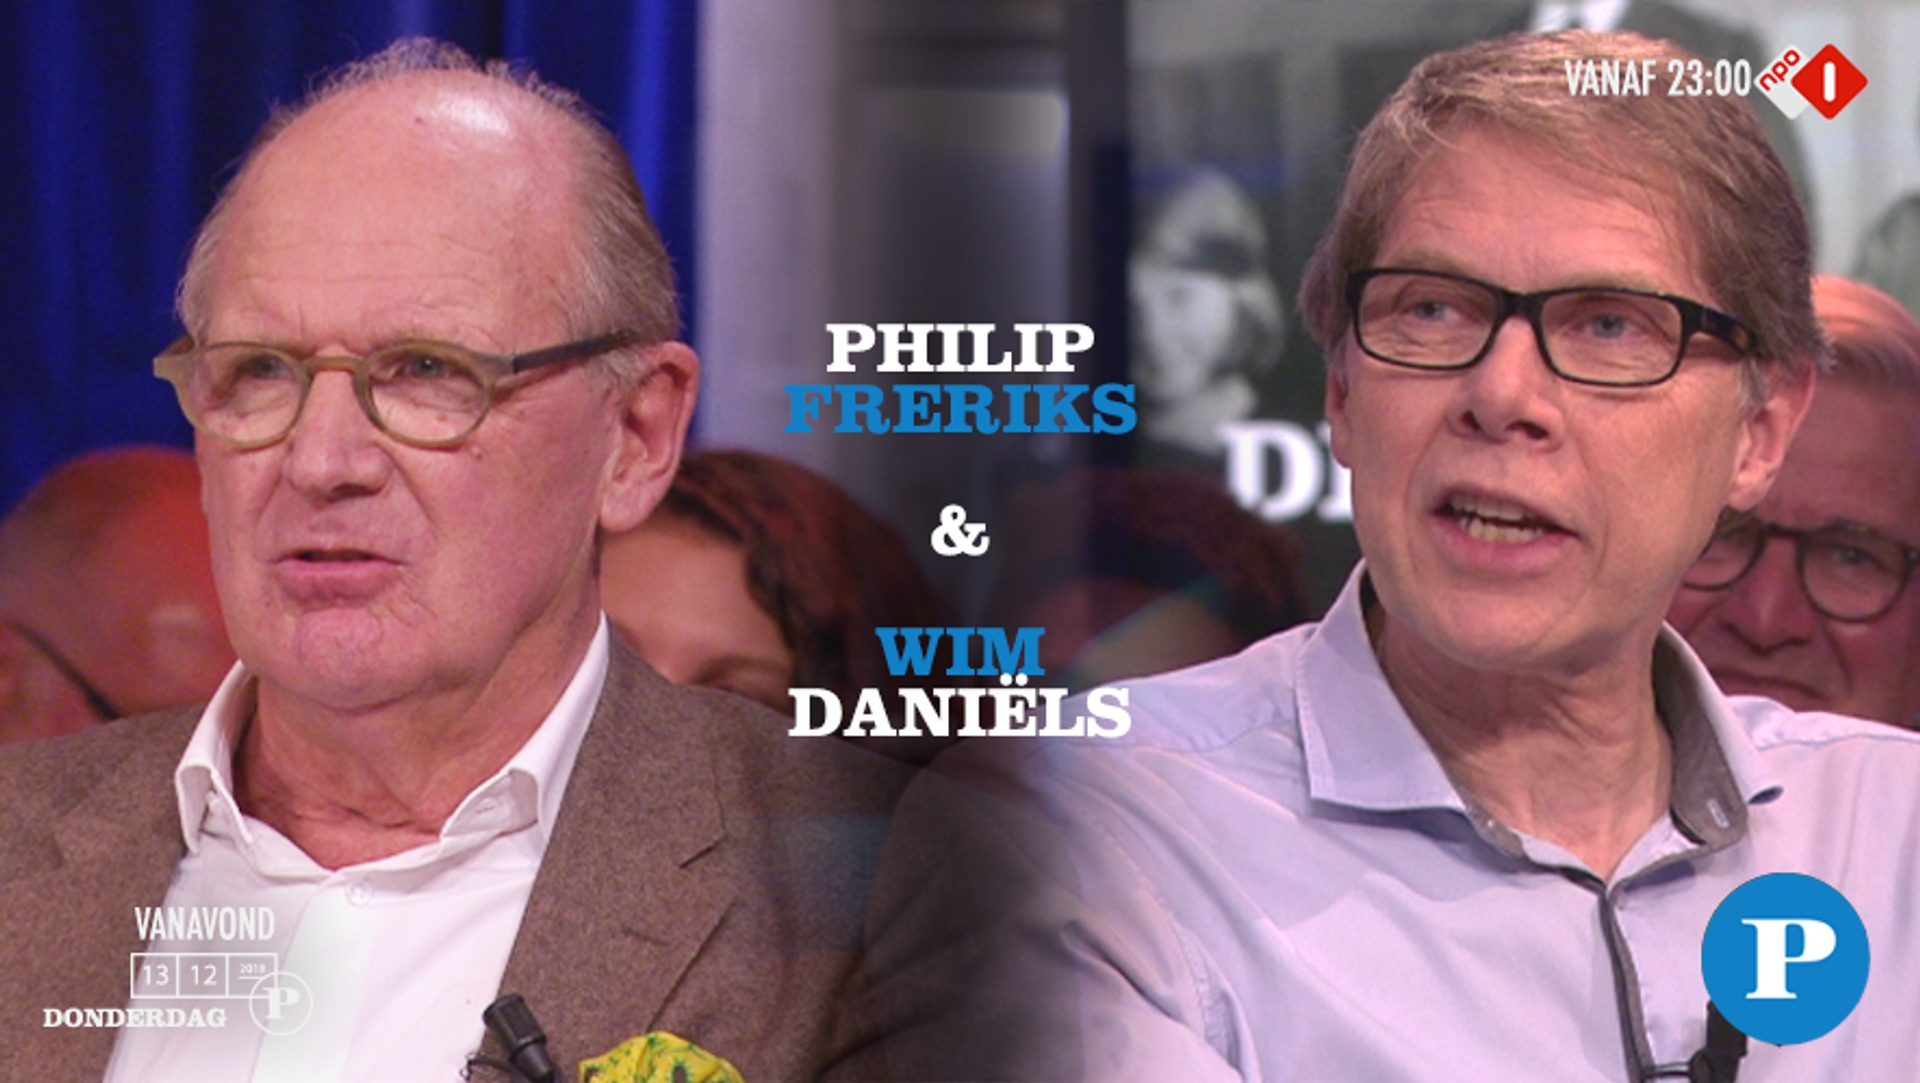 Philip Freriks en Wim Daniëls